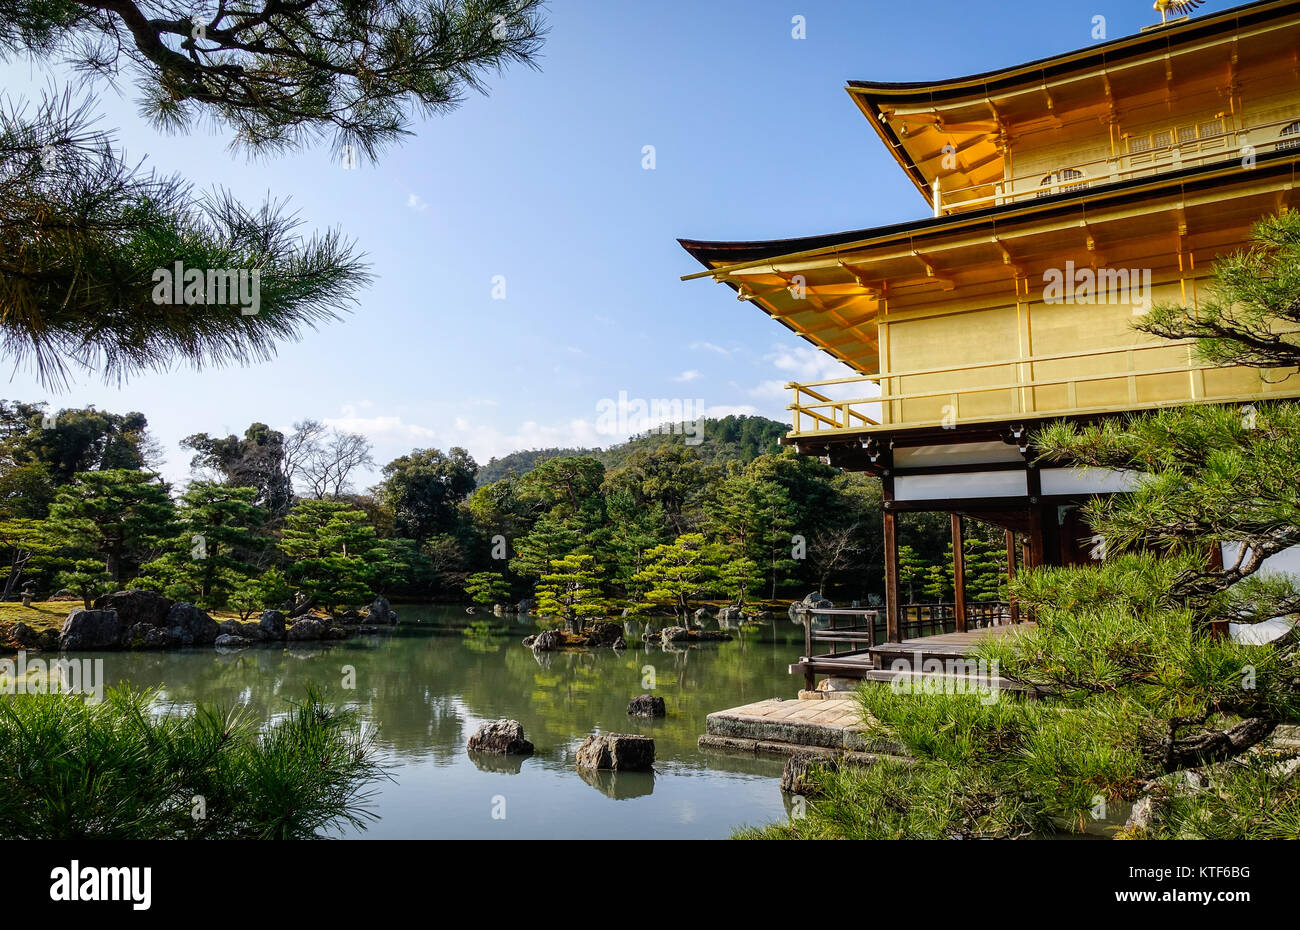 Kinkaku-ji Tempel am sonnigen Tag in Kyoto, Japan. Der Goldene Pavillon  befindet sich in einem herrlichen Japanischen Garten spazieren  Stockfotografie - Alamy